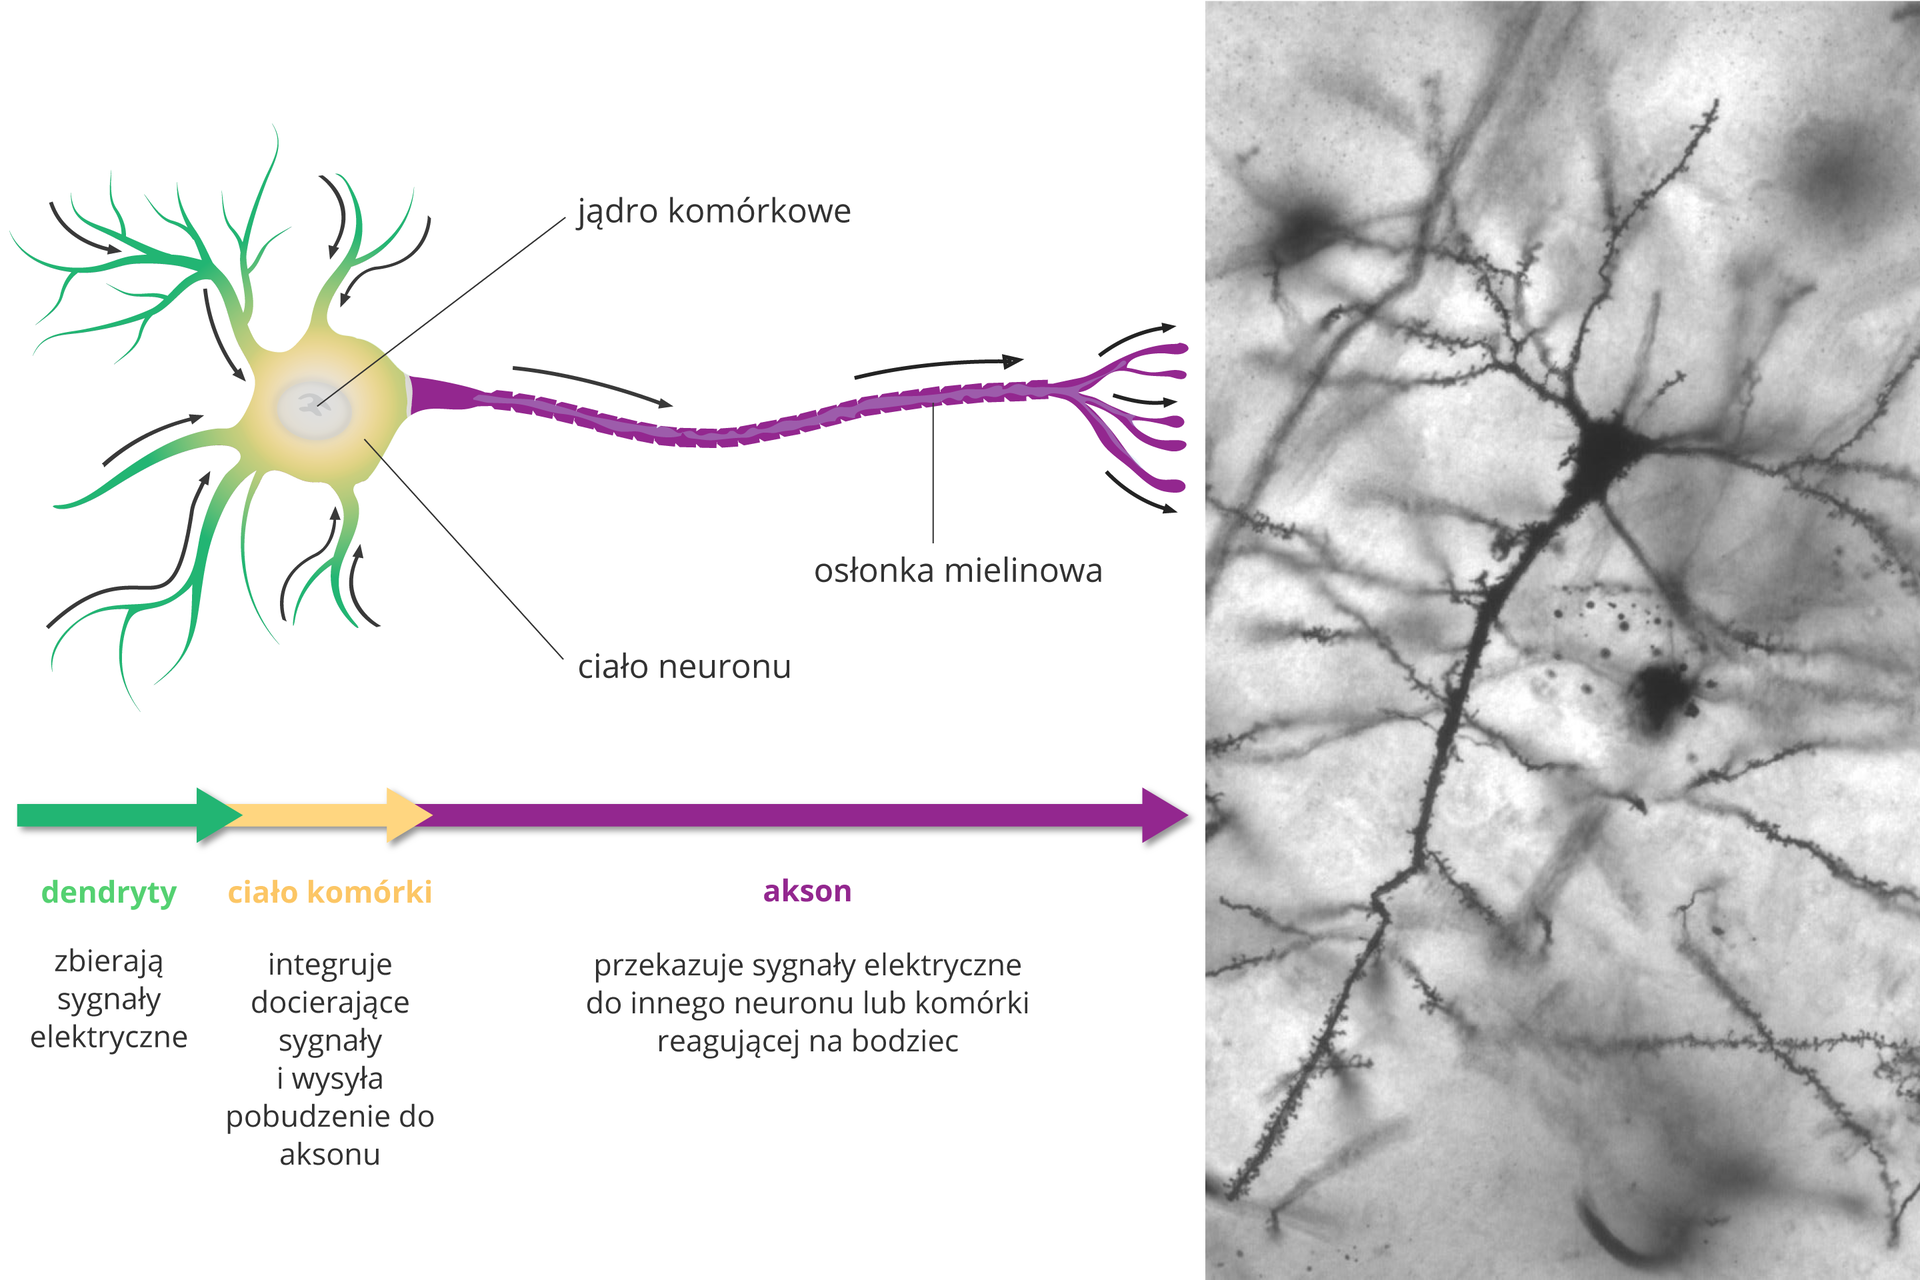 Ilustracja składa się z rysunku komórki nerwowej, schematu jej działania oraz fotografii z mikroskopu elektronowego. Neuron wygląda jak drzewko, leżące poziomo. Z lewej krótkie zielone wypustki to dendryty. Strzałki wskazują, że zbierają sygnały elektryczne i prowadzą je do żółtego ciała komórki. Jej zadaniem jest integracja sygnałów i pobudzenie fioletowego aksonu. Akson przekazuje sygnały elektryczne do innego neuronu lub komórki, reagującej na bodziec. Akson ma na zewnątrz przerywaną osłonkę mielinową. Fotografia przedstawia pojedynczą, czarną komórką nerwową na tle innych, nieostrych.